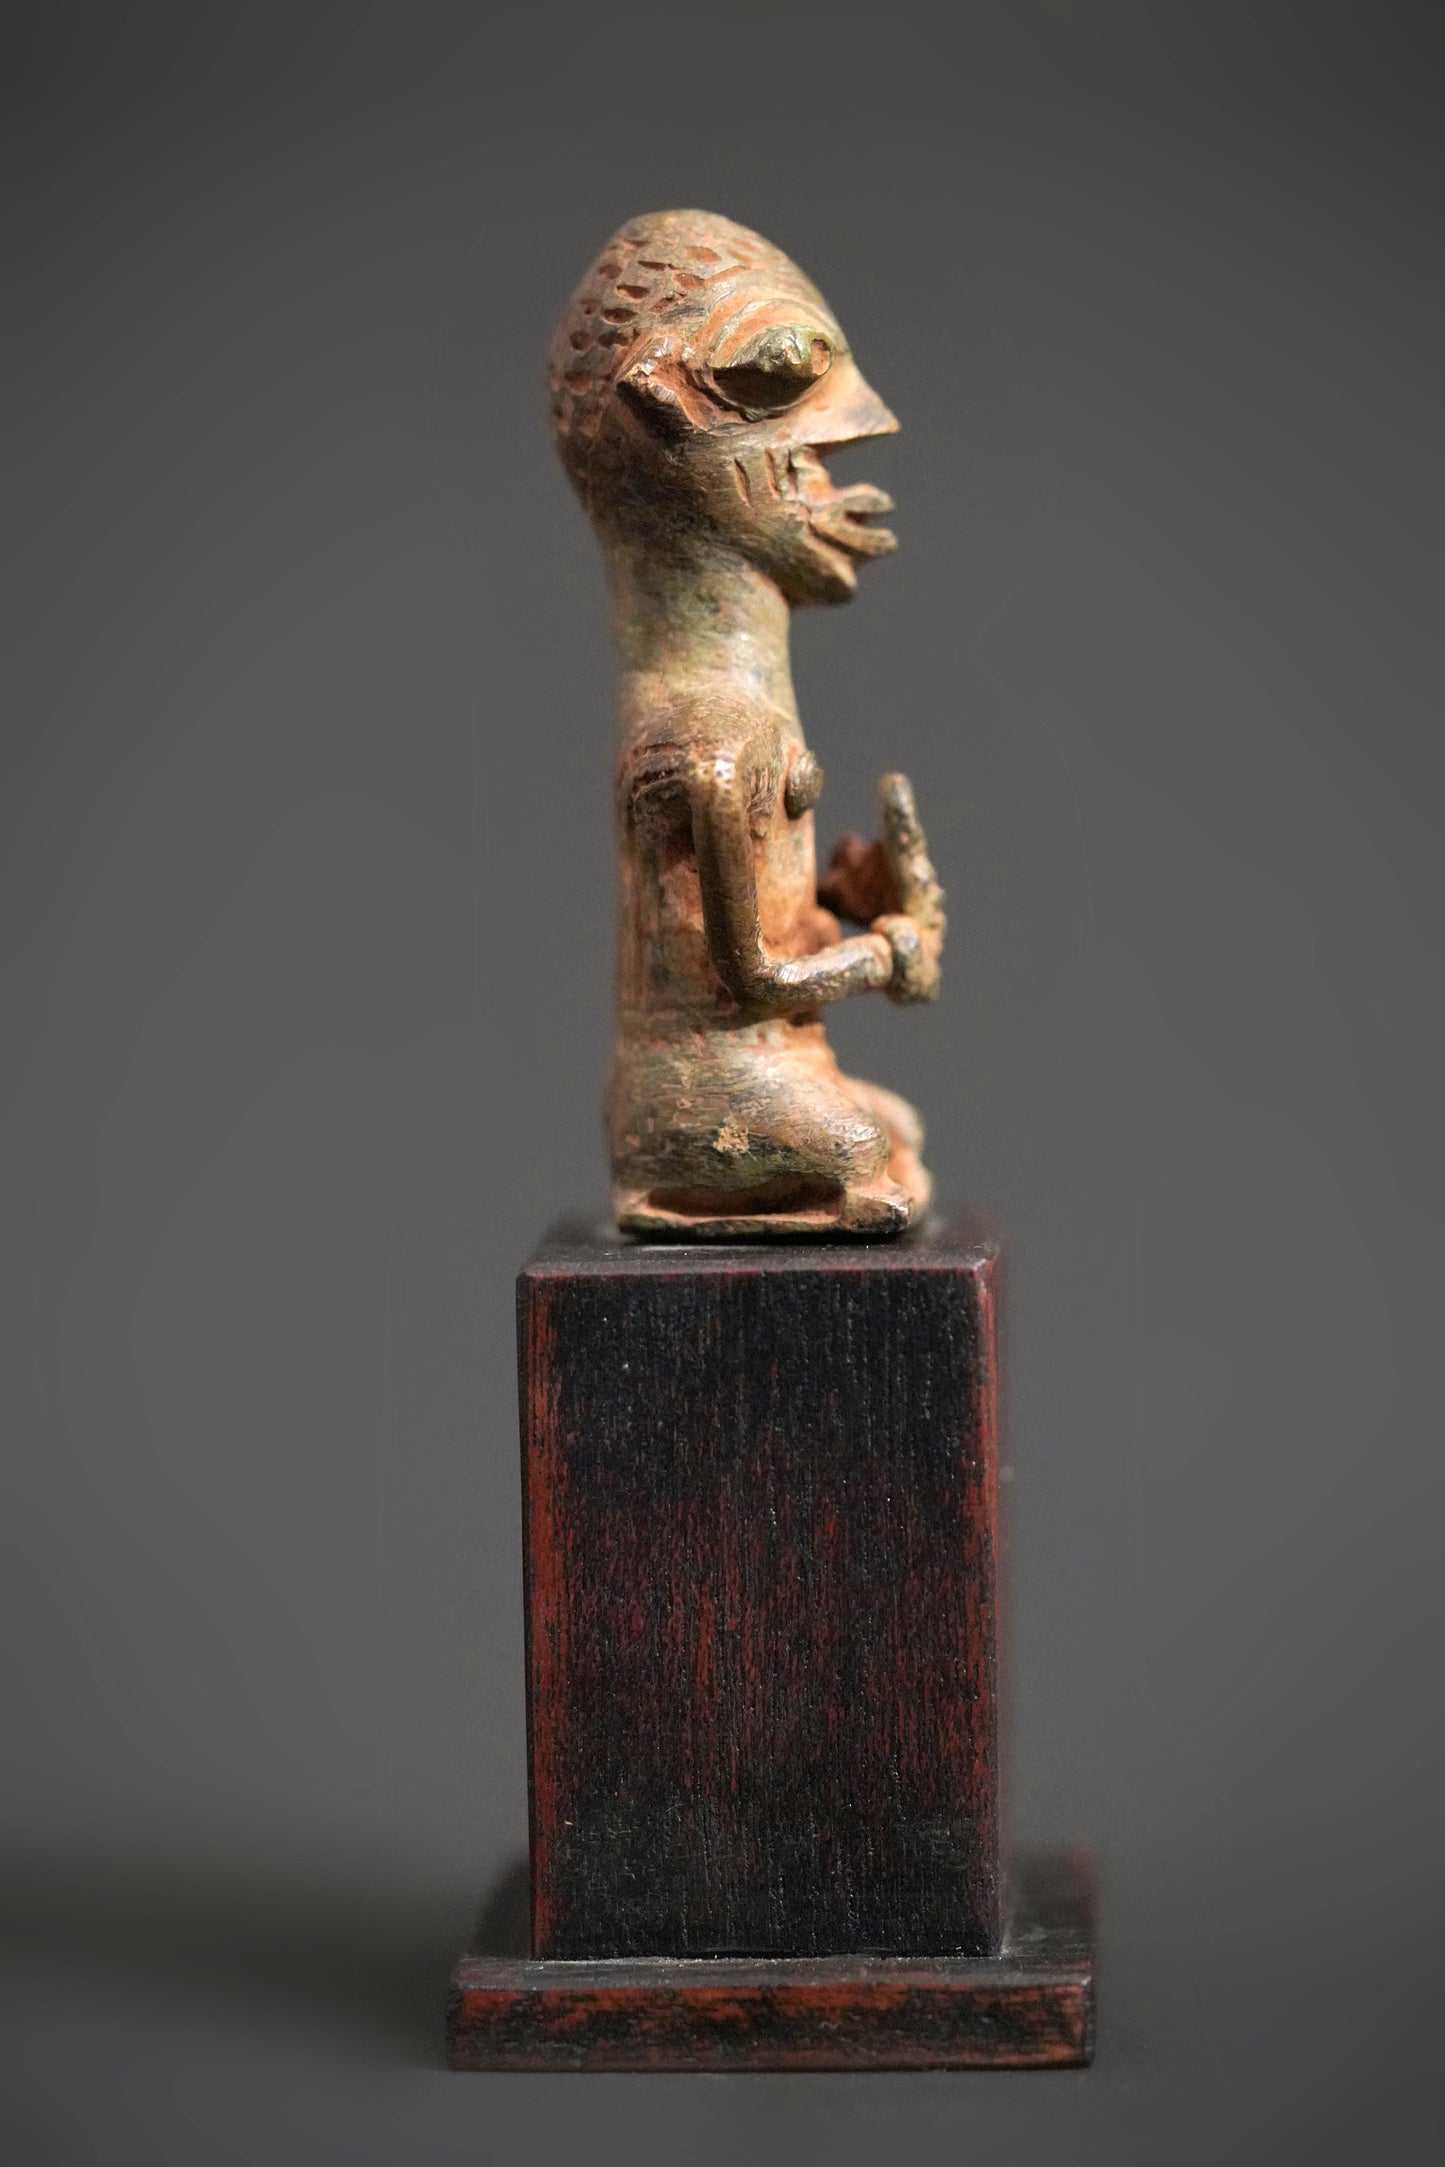 A male Yoruba metal sculpture